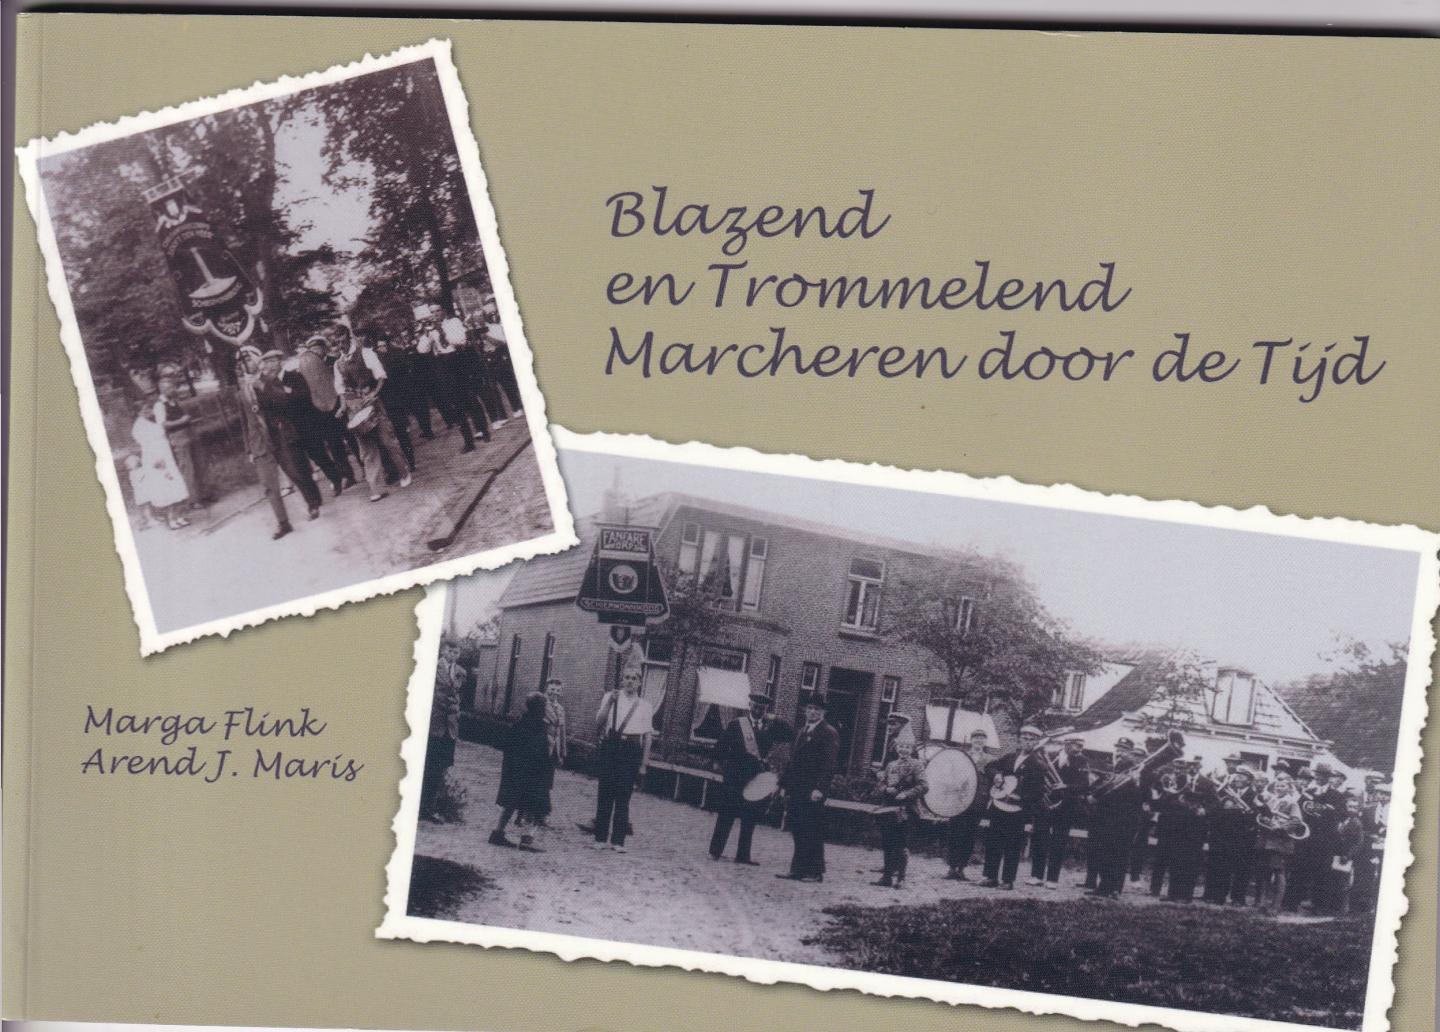 Flink, M en A.J. Maris - Blazend en trommelend door de tijd , Schiermonnikoog 1888-2013 125 jaar fanfaremuziek